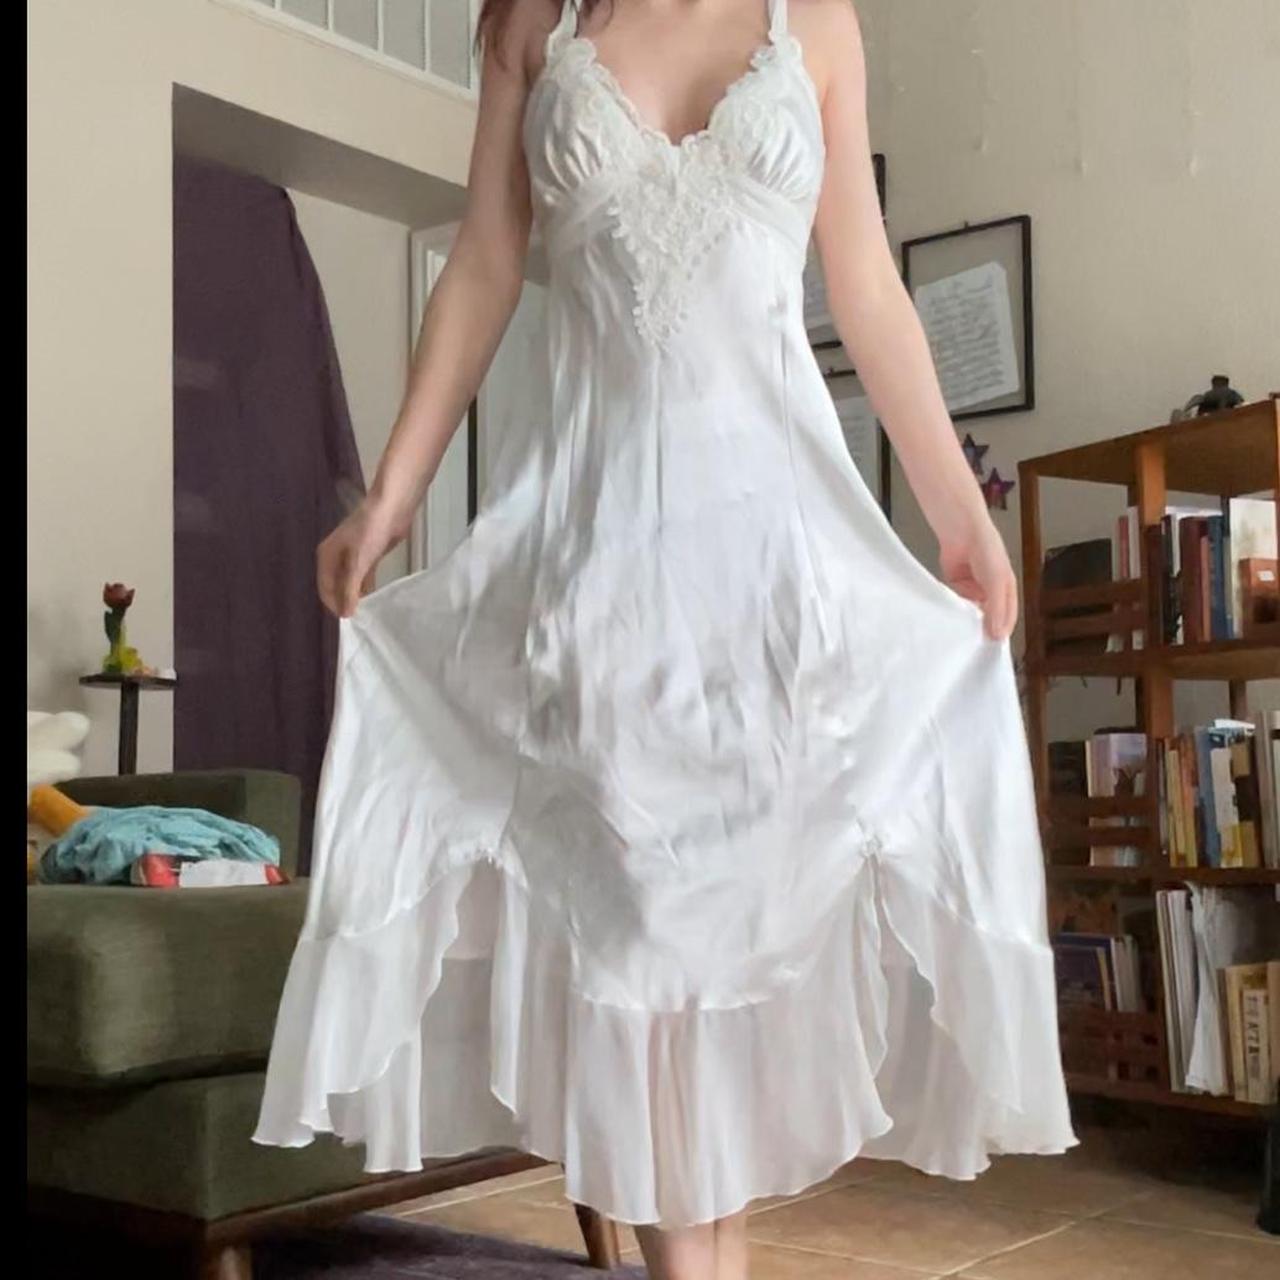 In Bloom by Jonquil Women's White Dress | Depop